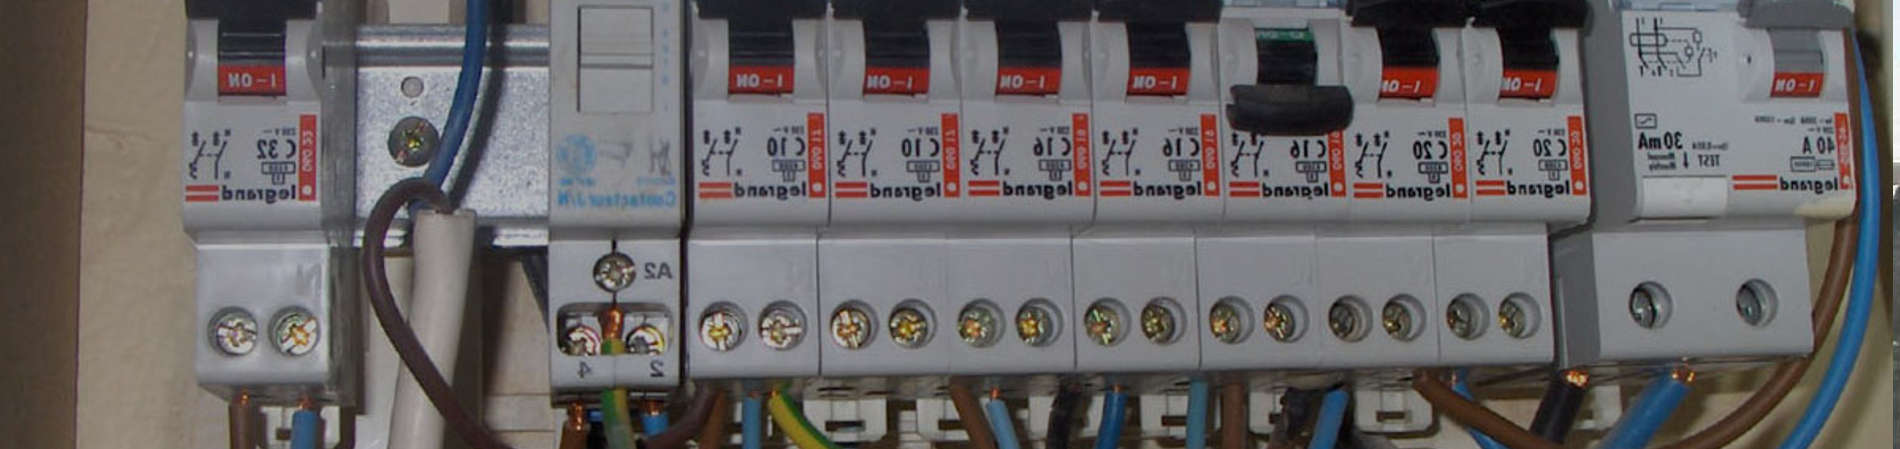 Reparar Regleta Electrica Base toma multiple (Interruptor estropeado) 